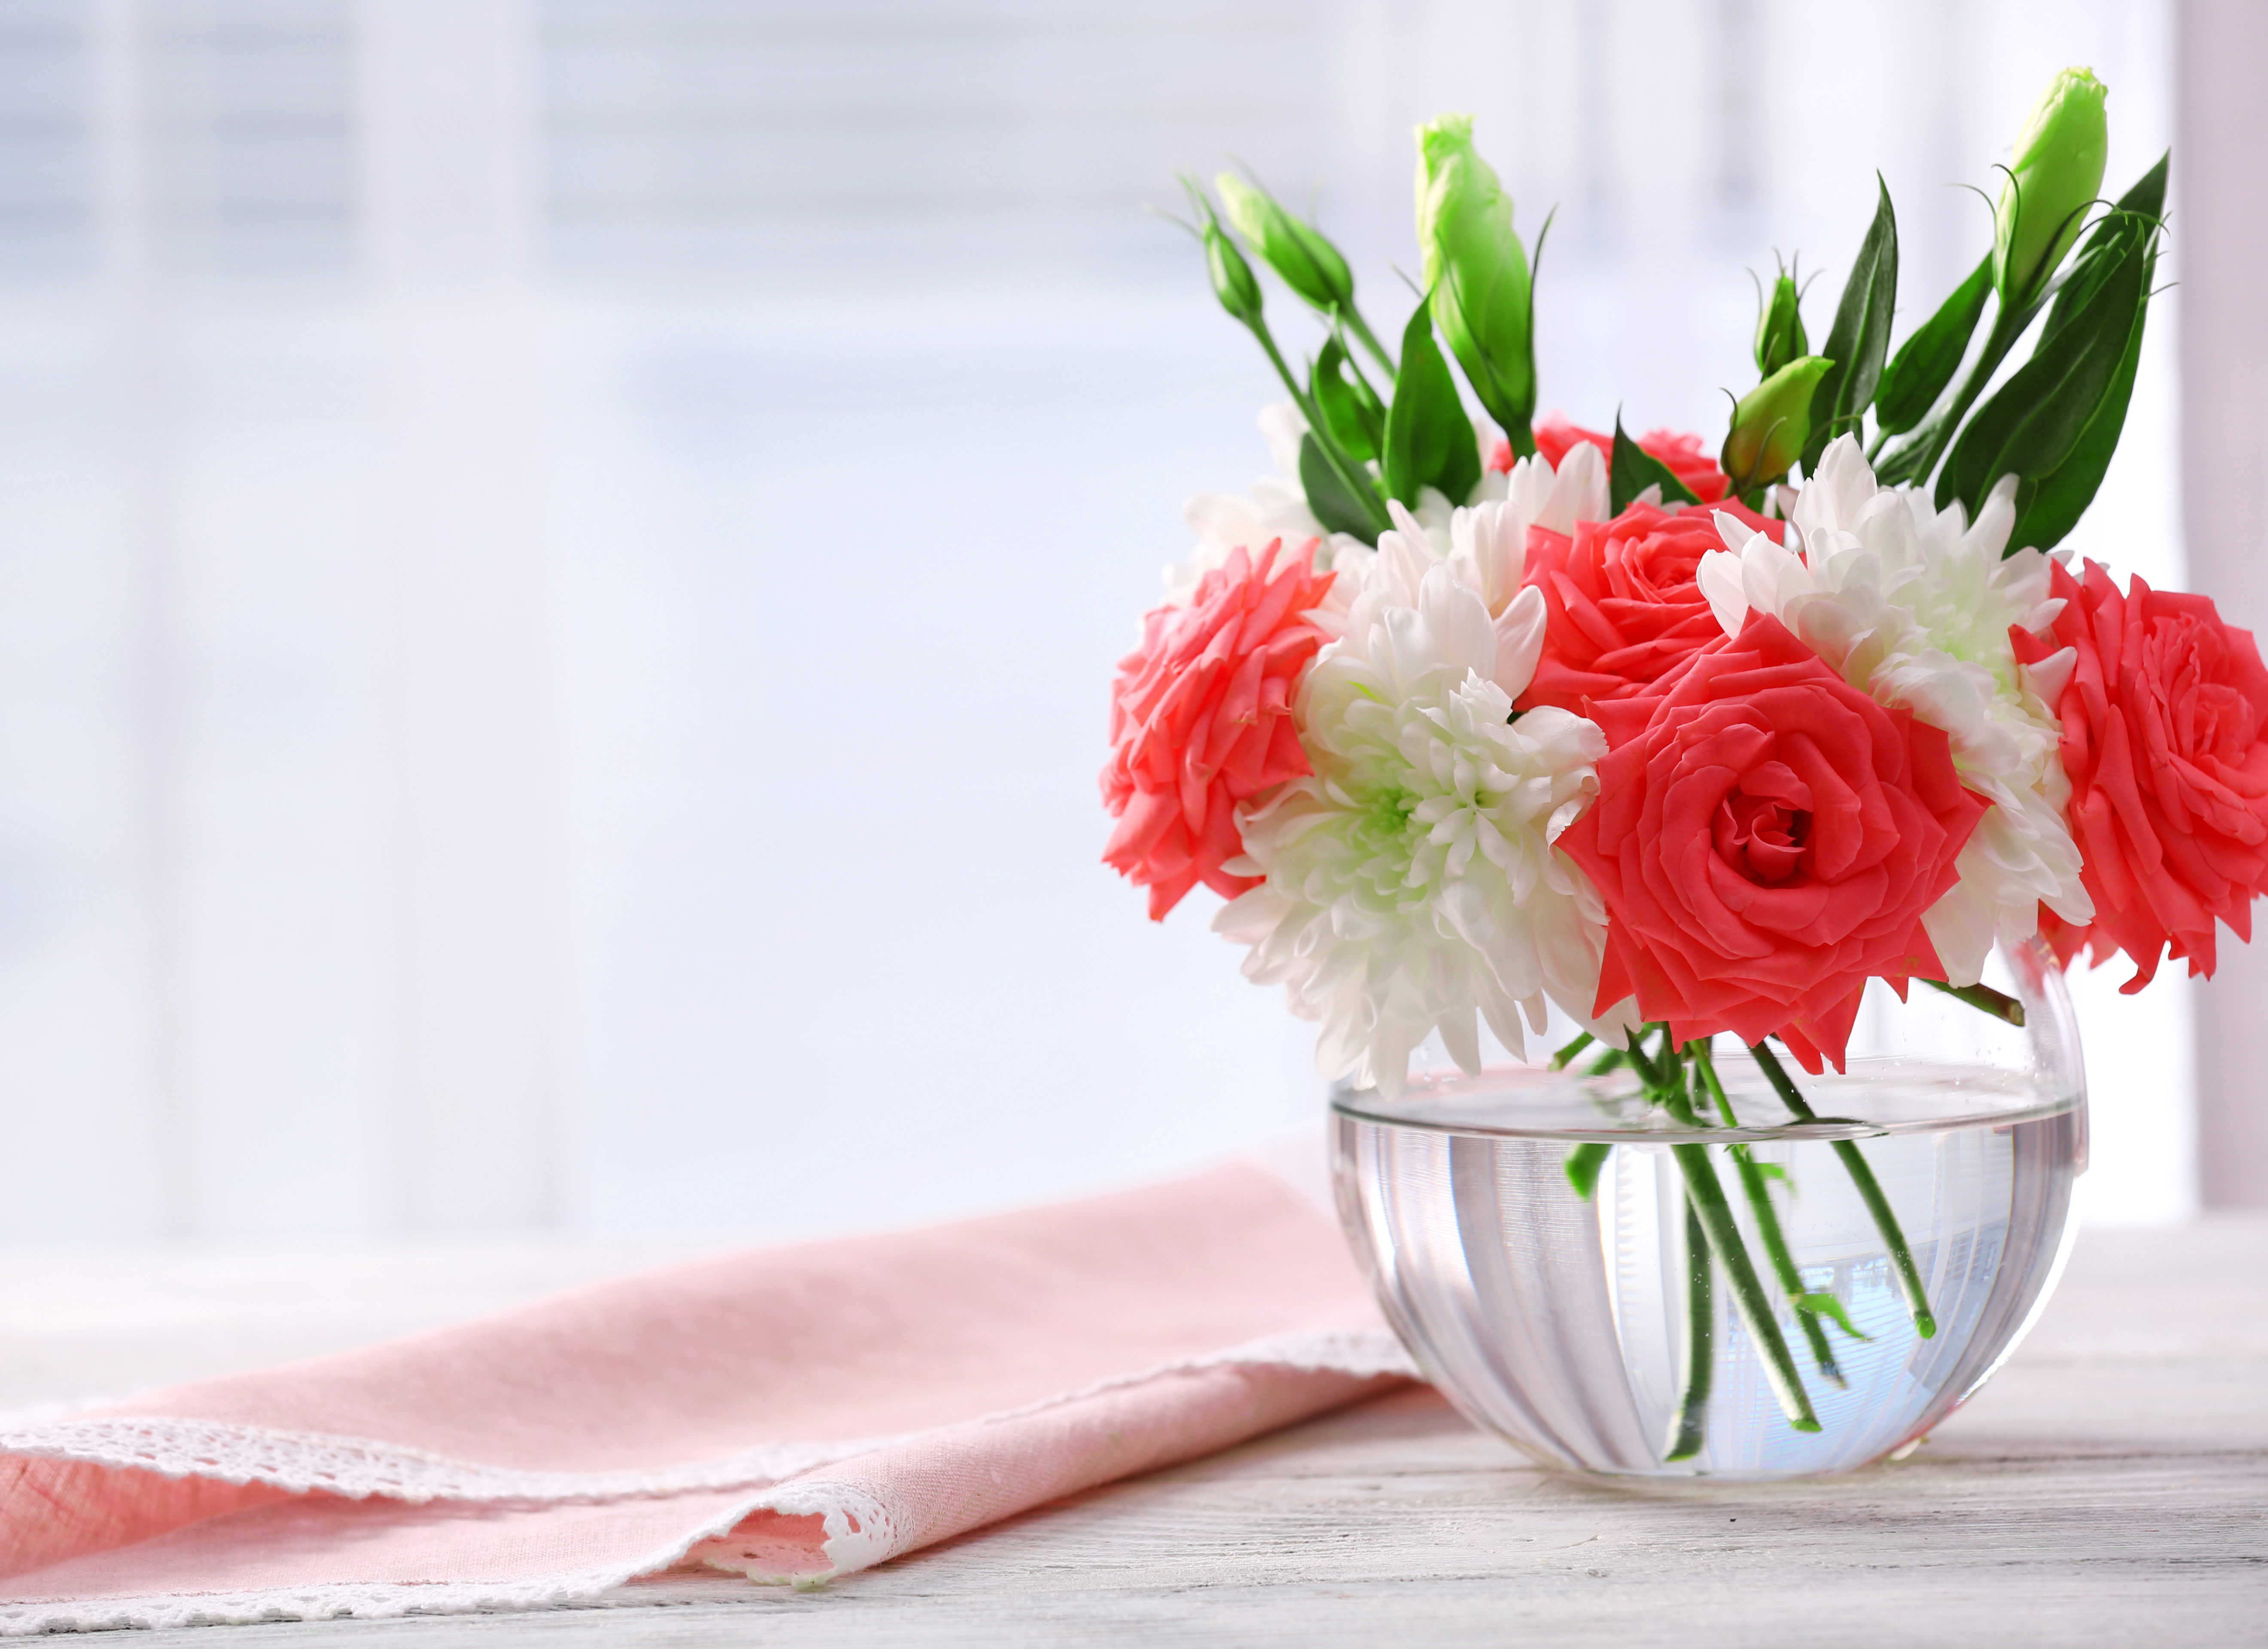 white flower, vase, flower, photography, still life, eustoma, handkerchief, red flower, rose